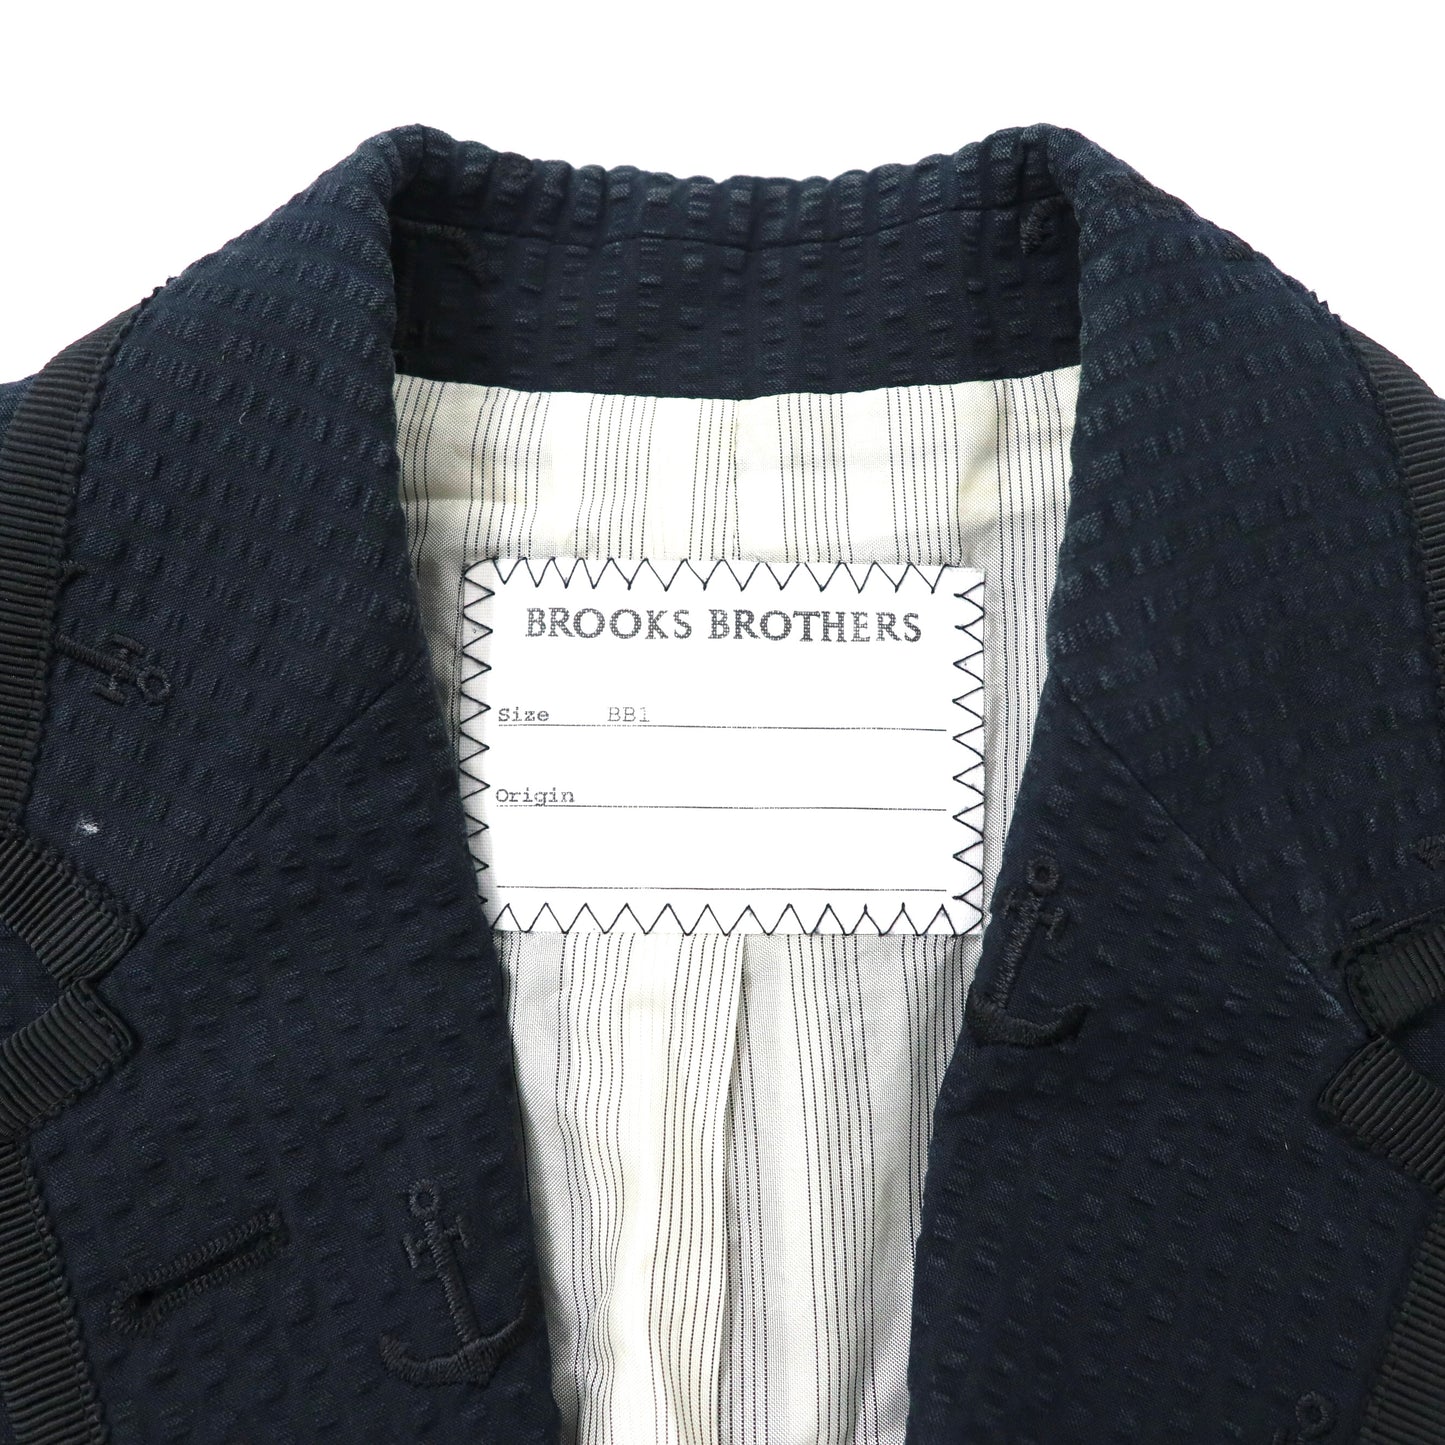 BROOKS BROTHERS シアサッカー テーラードジャケット BB1 ネイビー コットン アンカー刺繍 ルーマニア製